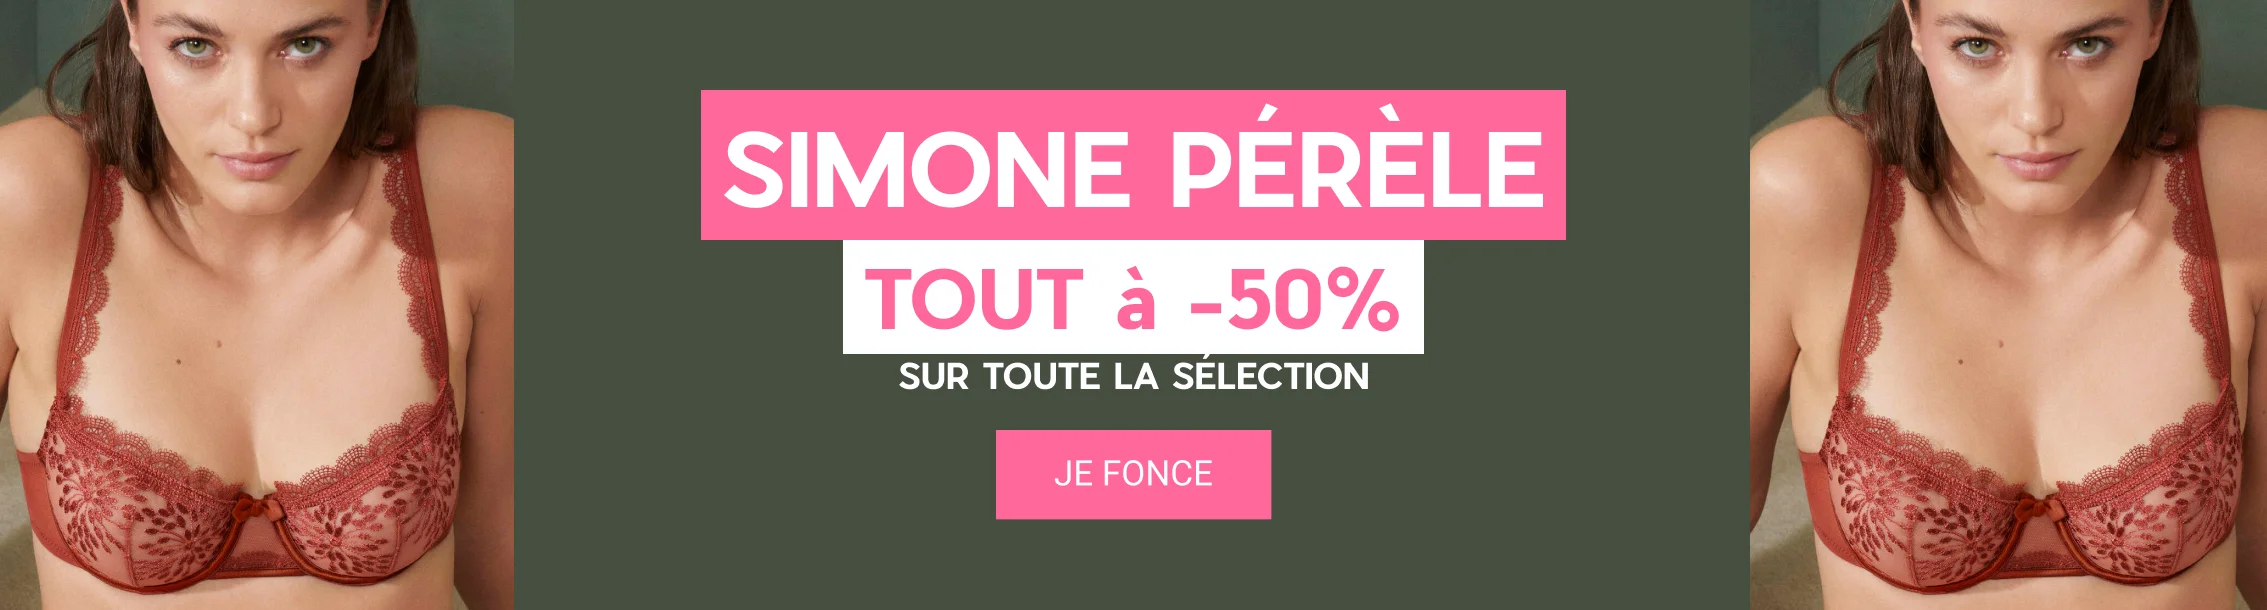 Simone Pérèle : tout à -50% !